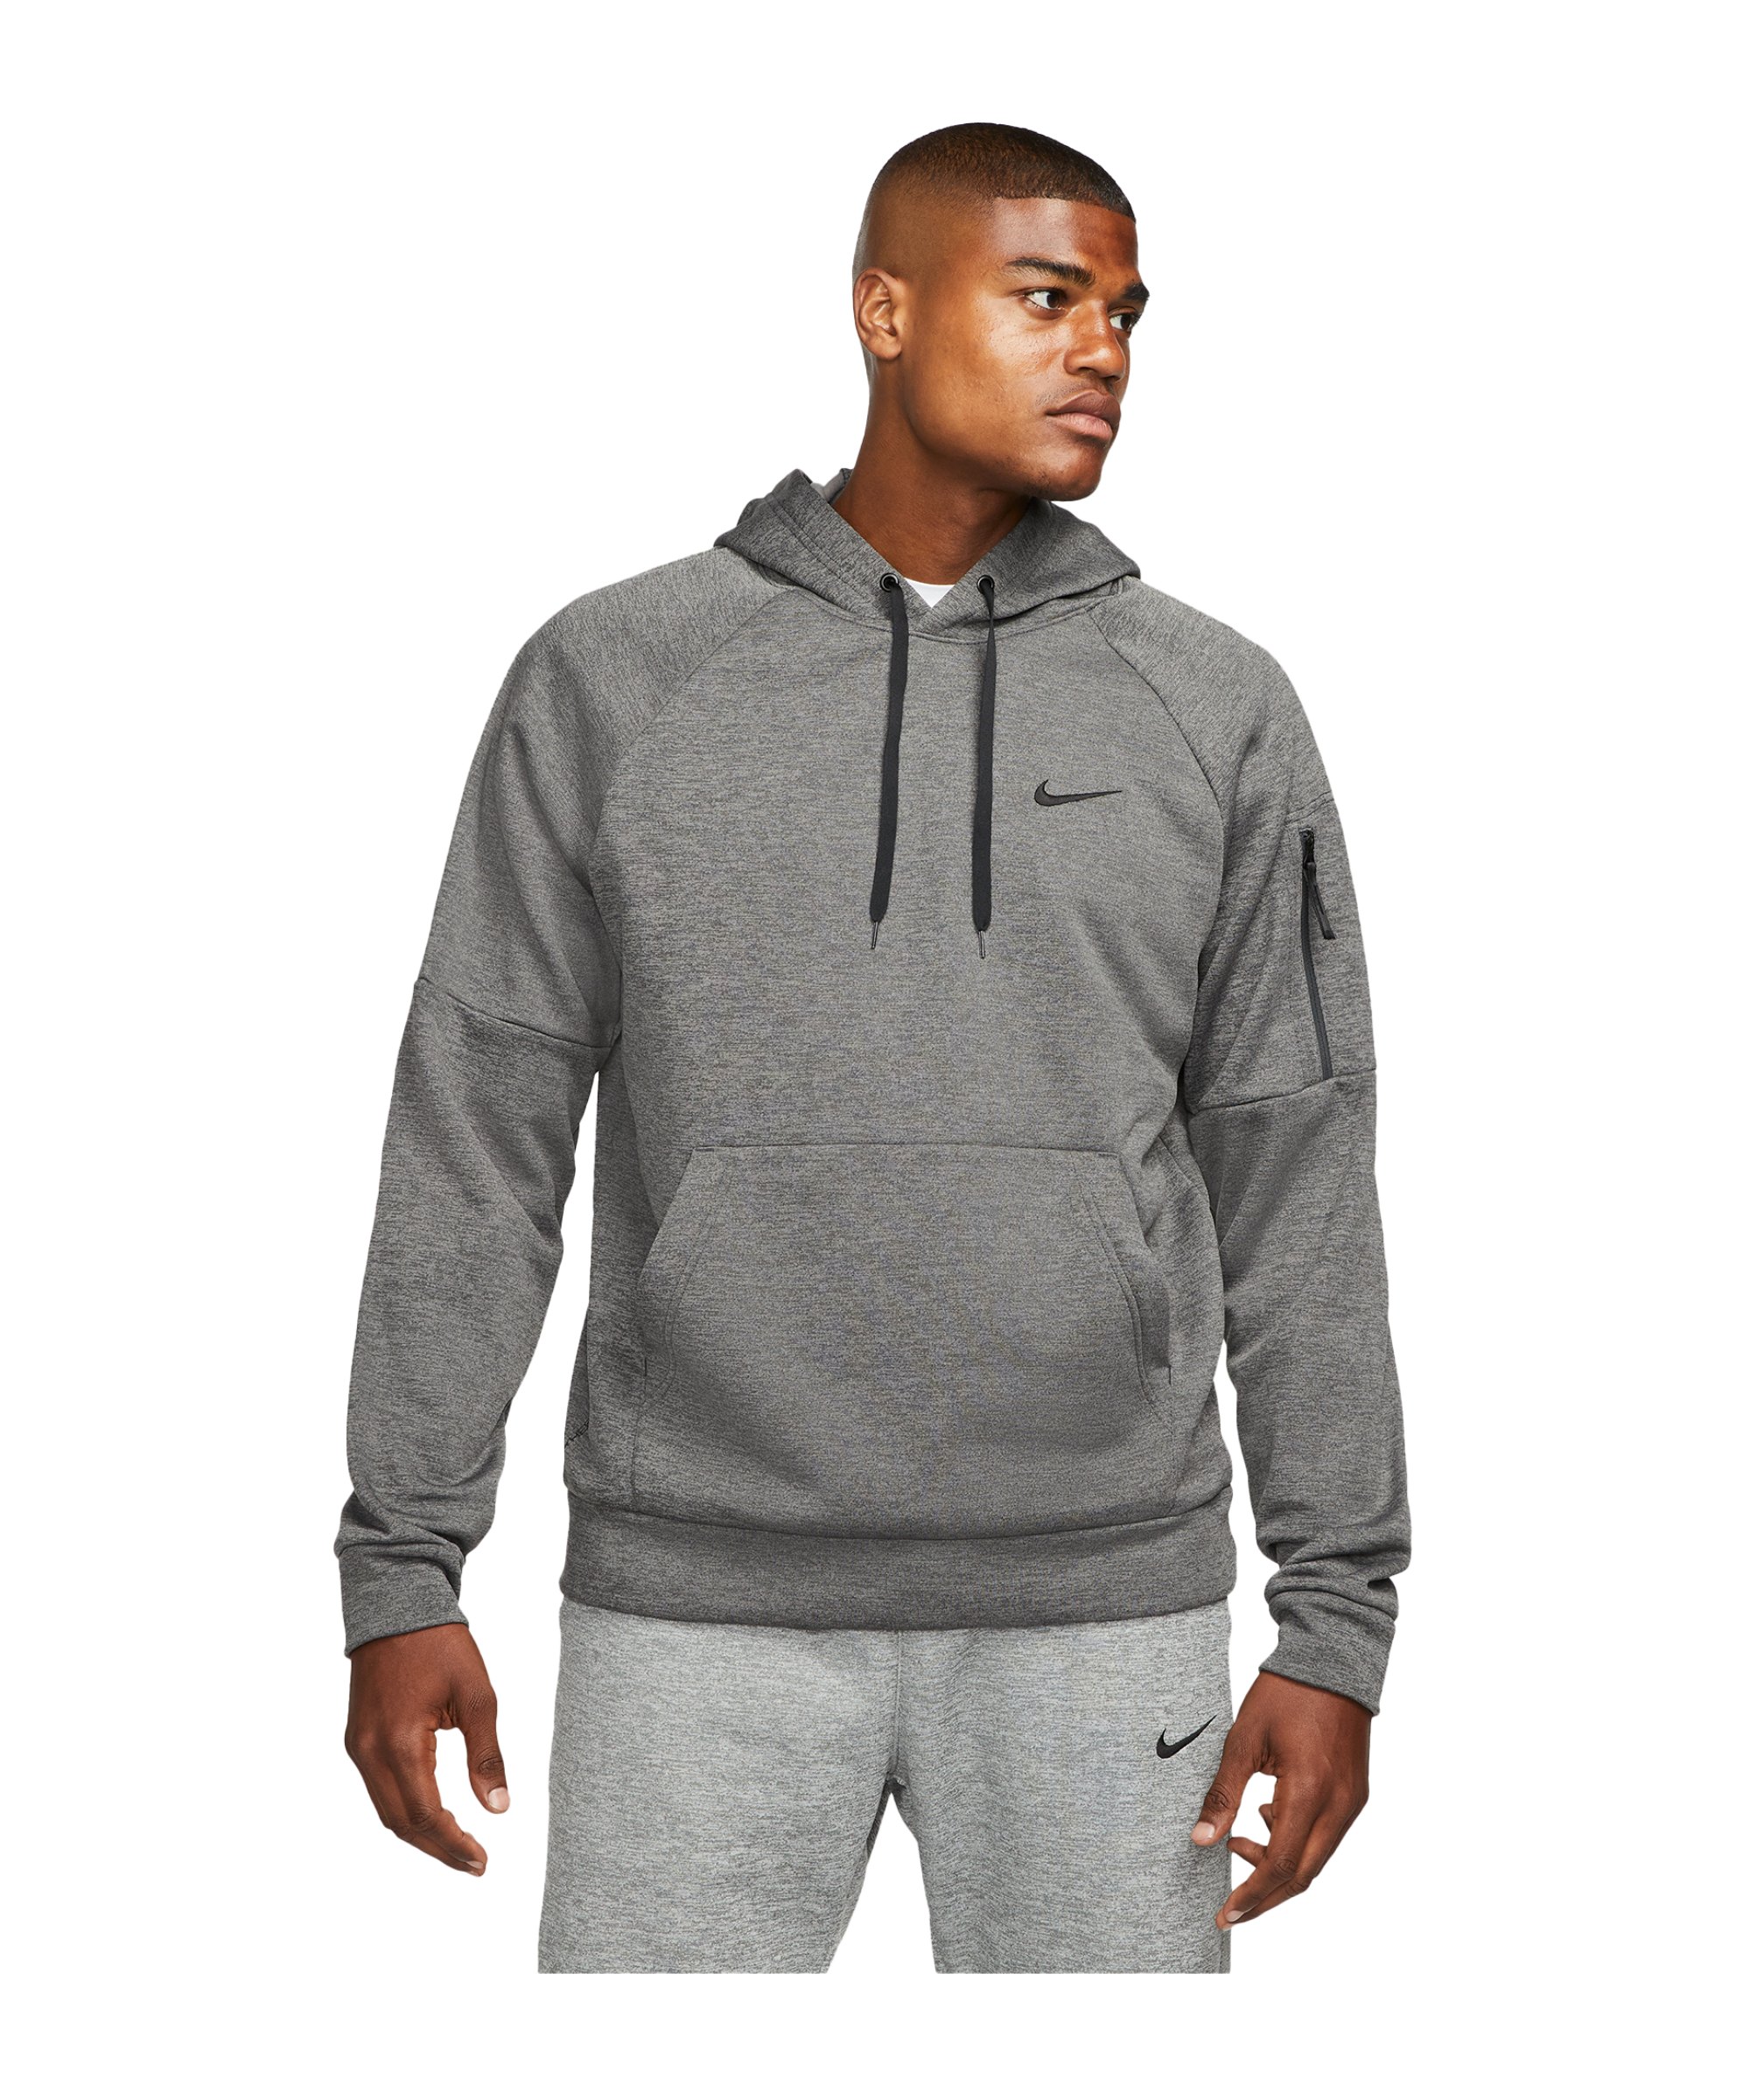 Nike Hoody Grau F071 - grau